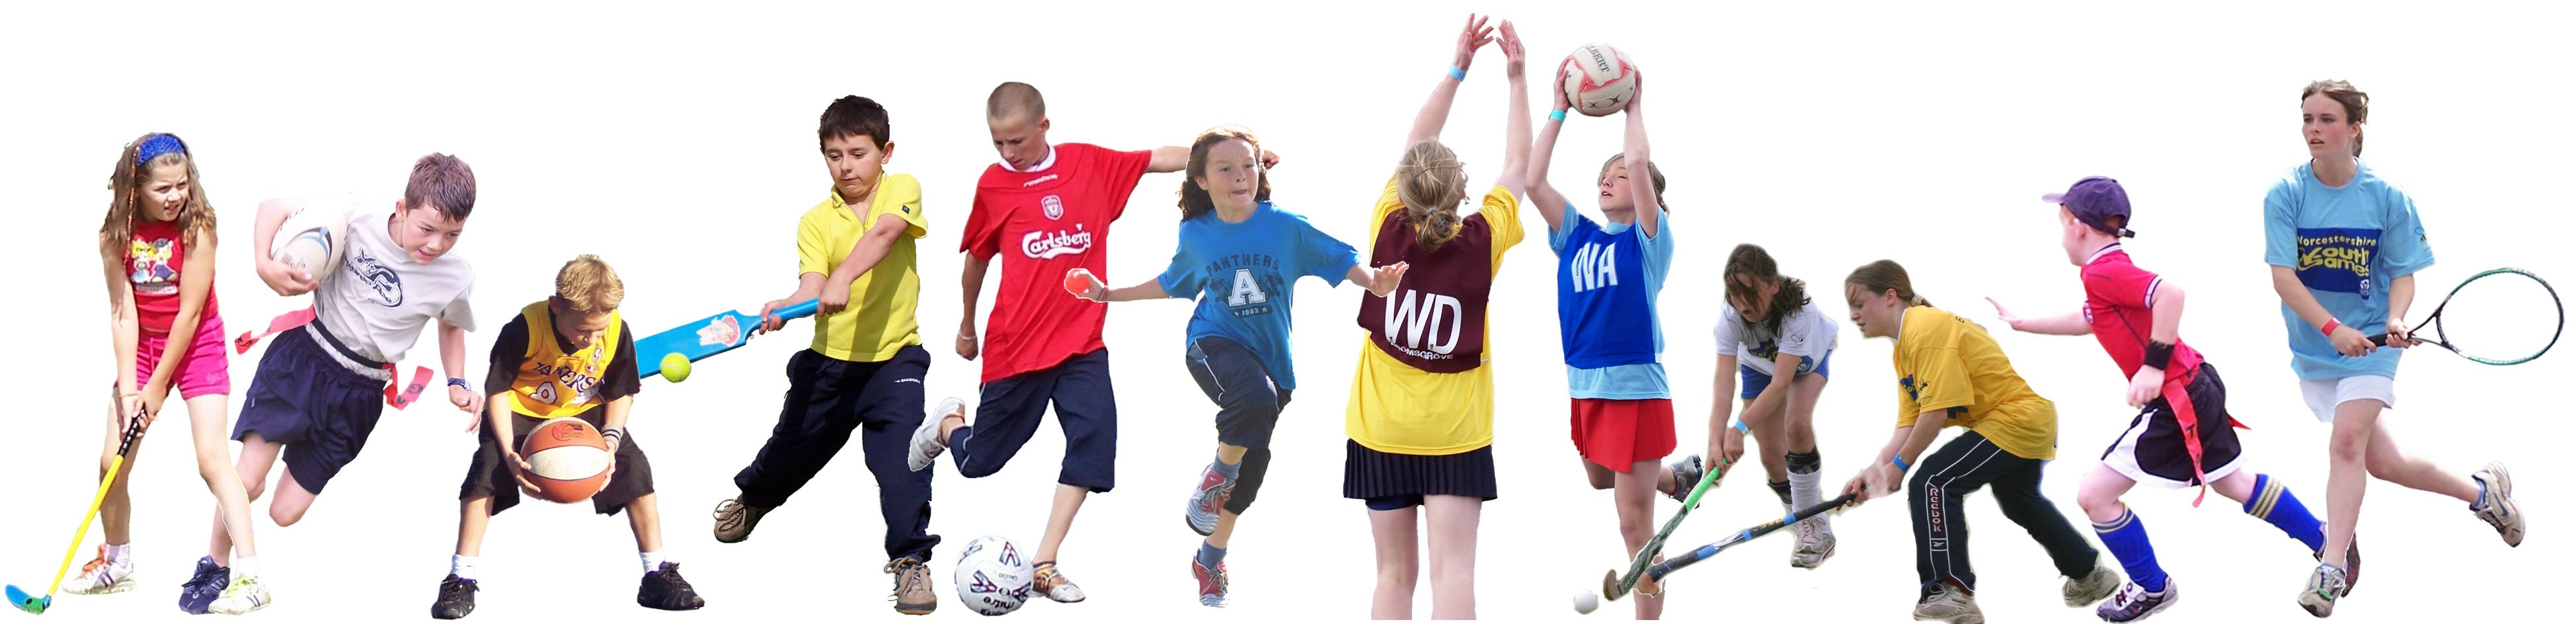 All sports life. Спорт дети. Физическая культура. Физическая культура на белом фоне. Спортивные дети на белом фоне.